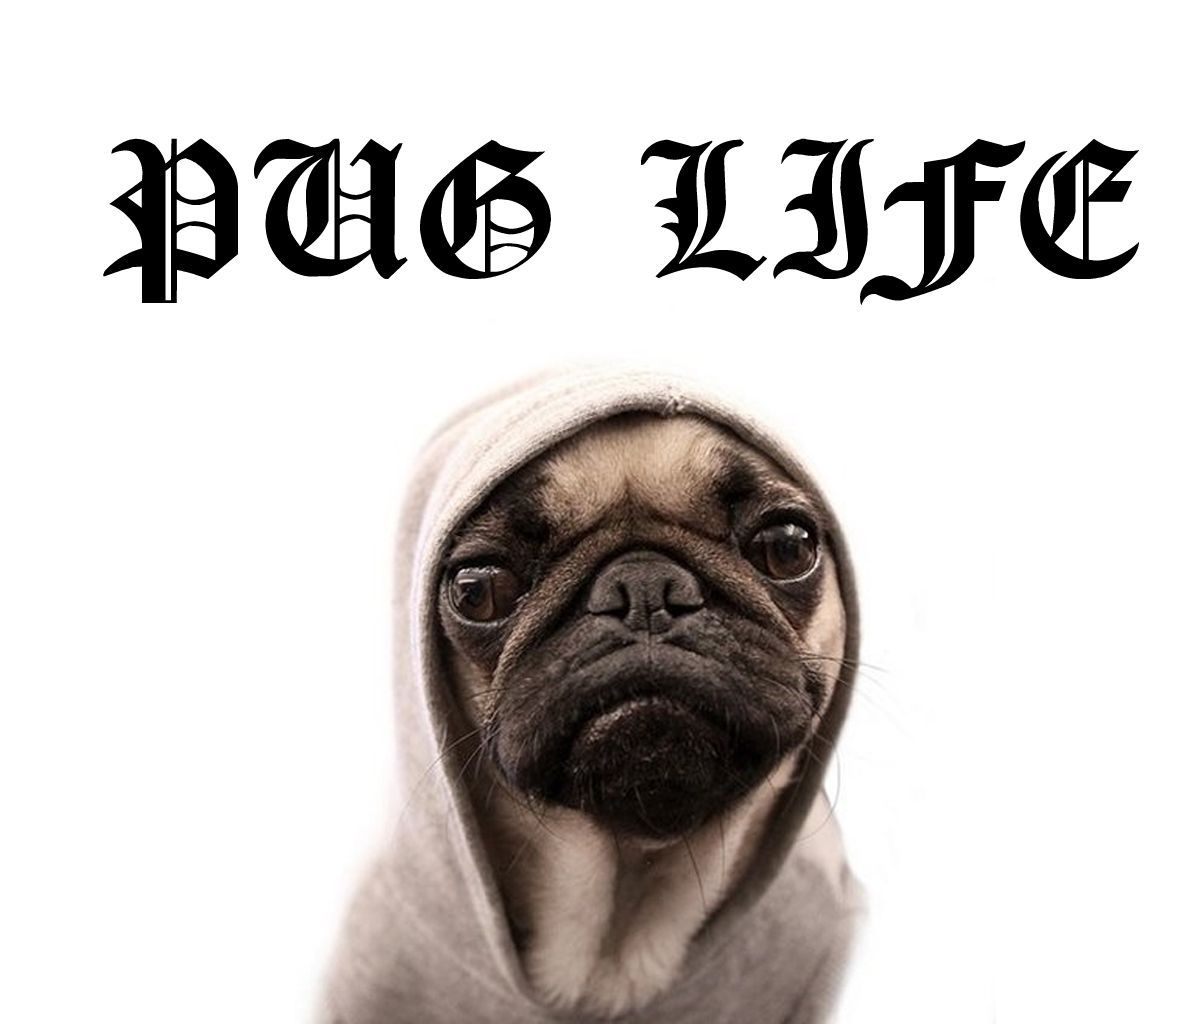 Pug Life!. Pug memes, Cute pugs, Pug life